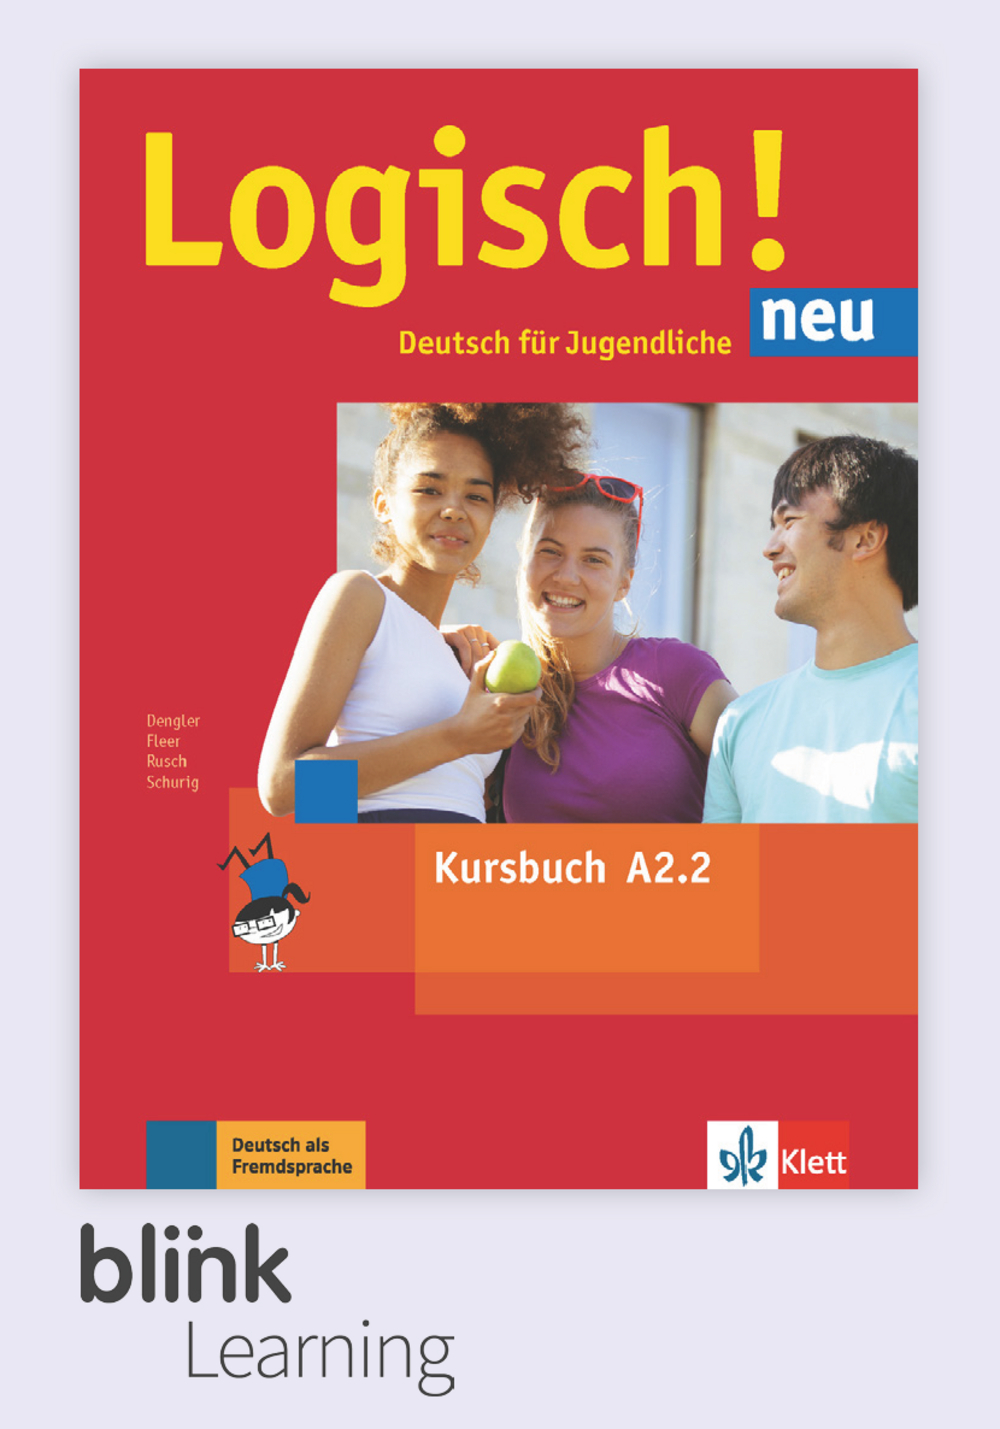 Logisch! NEU A2.2 Digital Kursbuch für Unterrichtende / Цифровой учебник для учителя